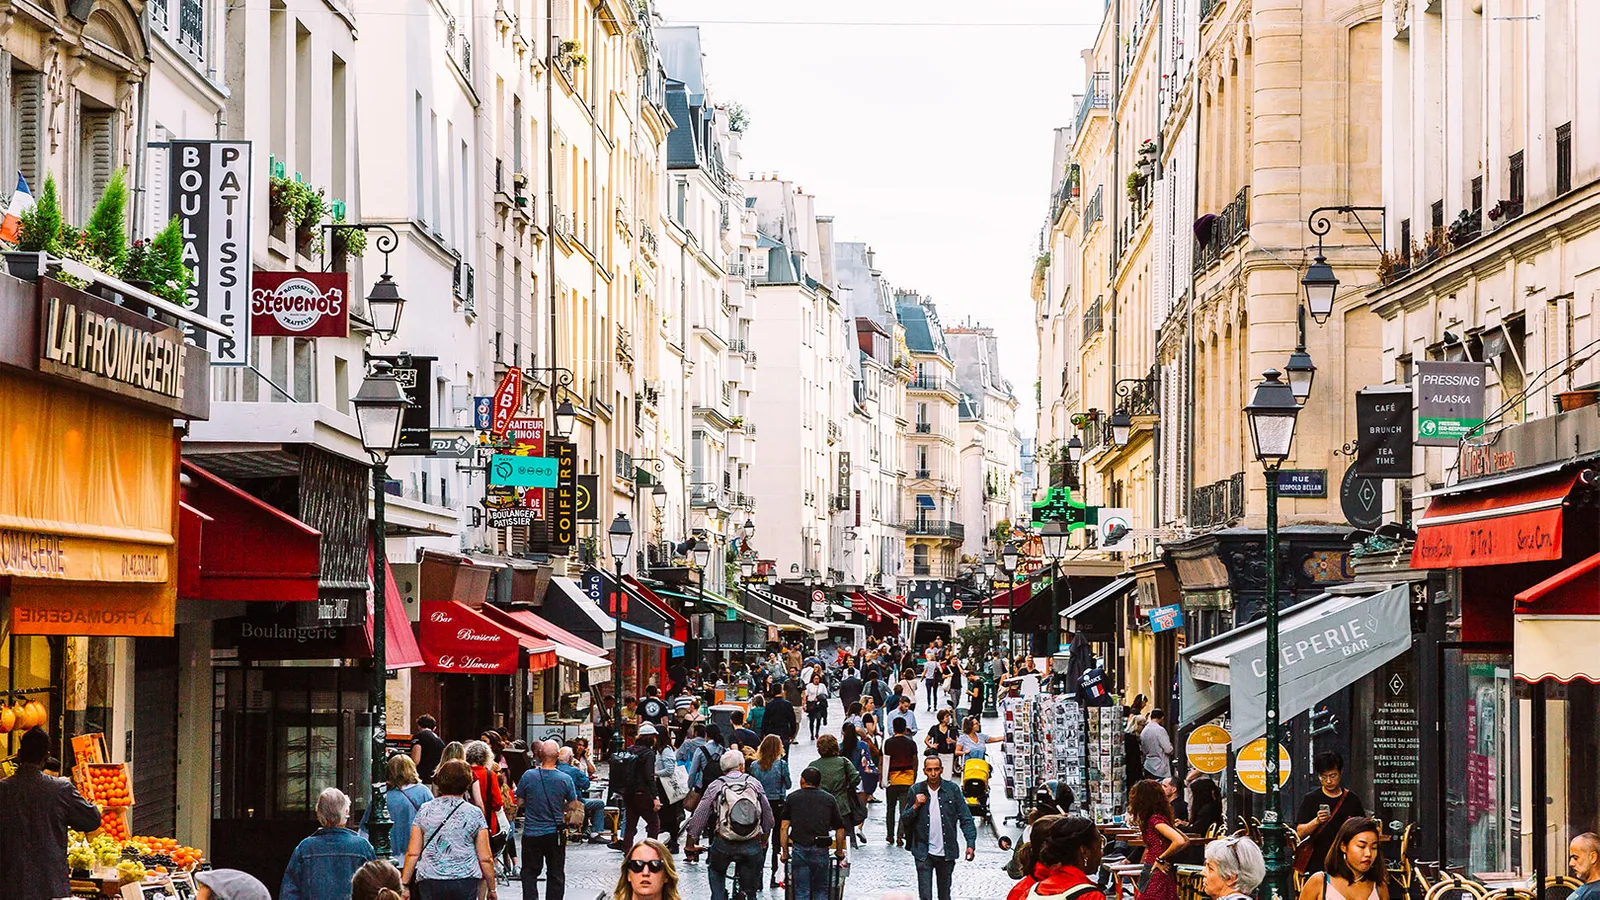 Paris esta proyectada a convertirse en una ciudad peatonal